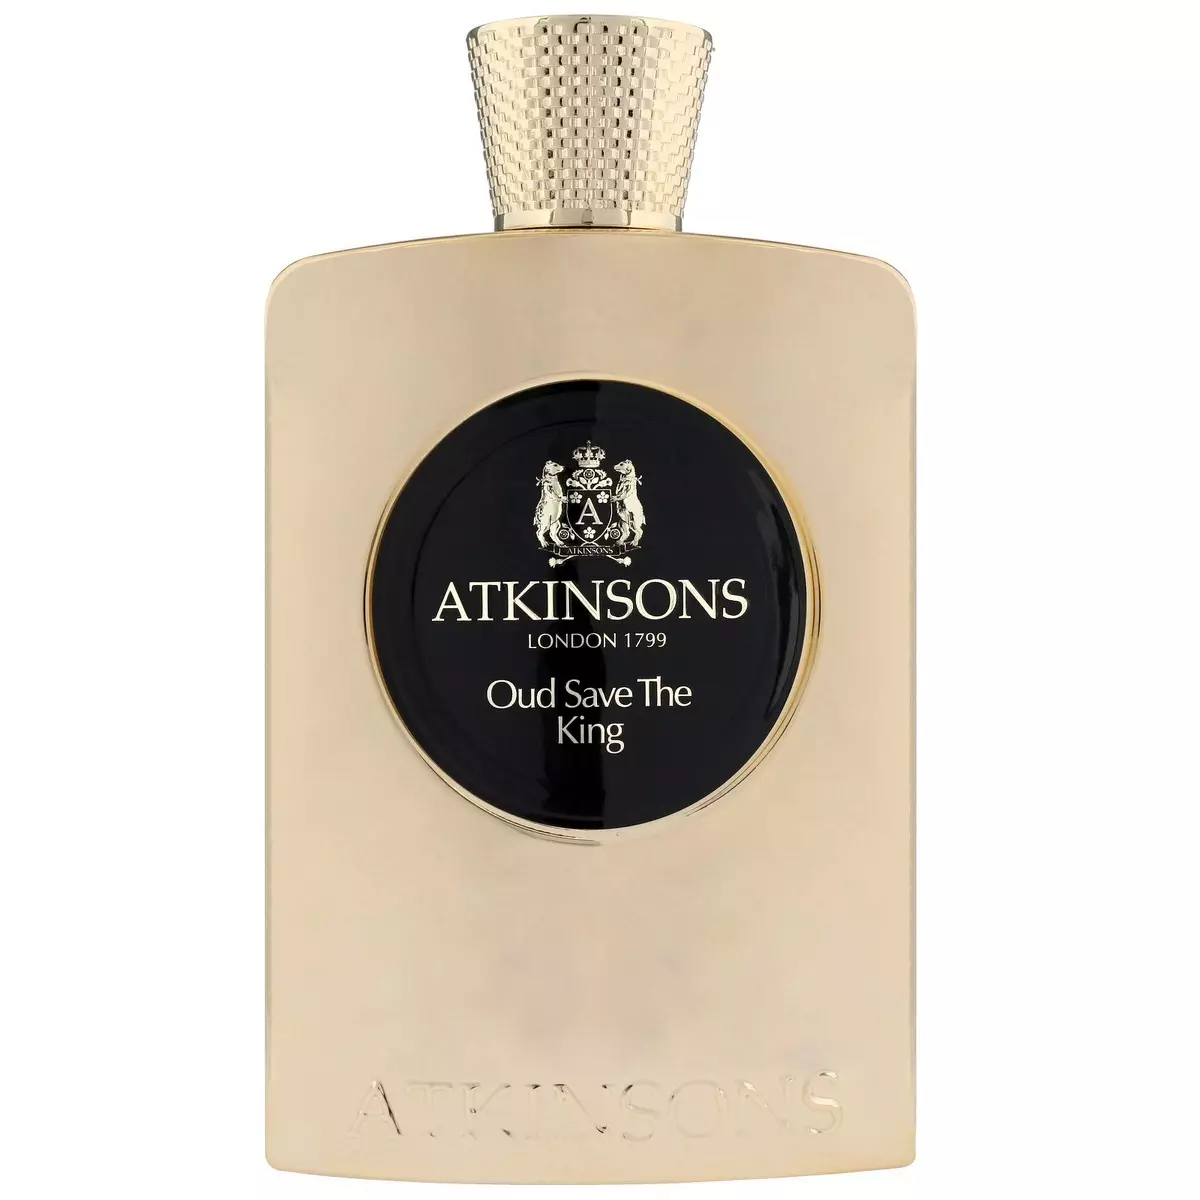 Atkinsons Parfymer: Dameklær og menns parfymer, Parfyme gjennomgang 24 Old Bond Street Triple Extract, Rose i Wonderland, California Valmpy Toalett Vann og andre smaker Hvordan velge 23439_8